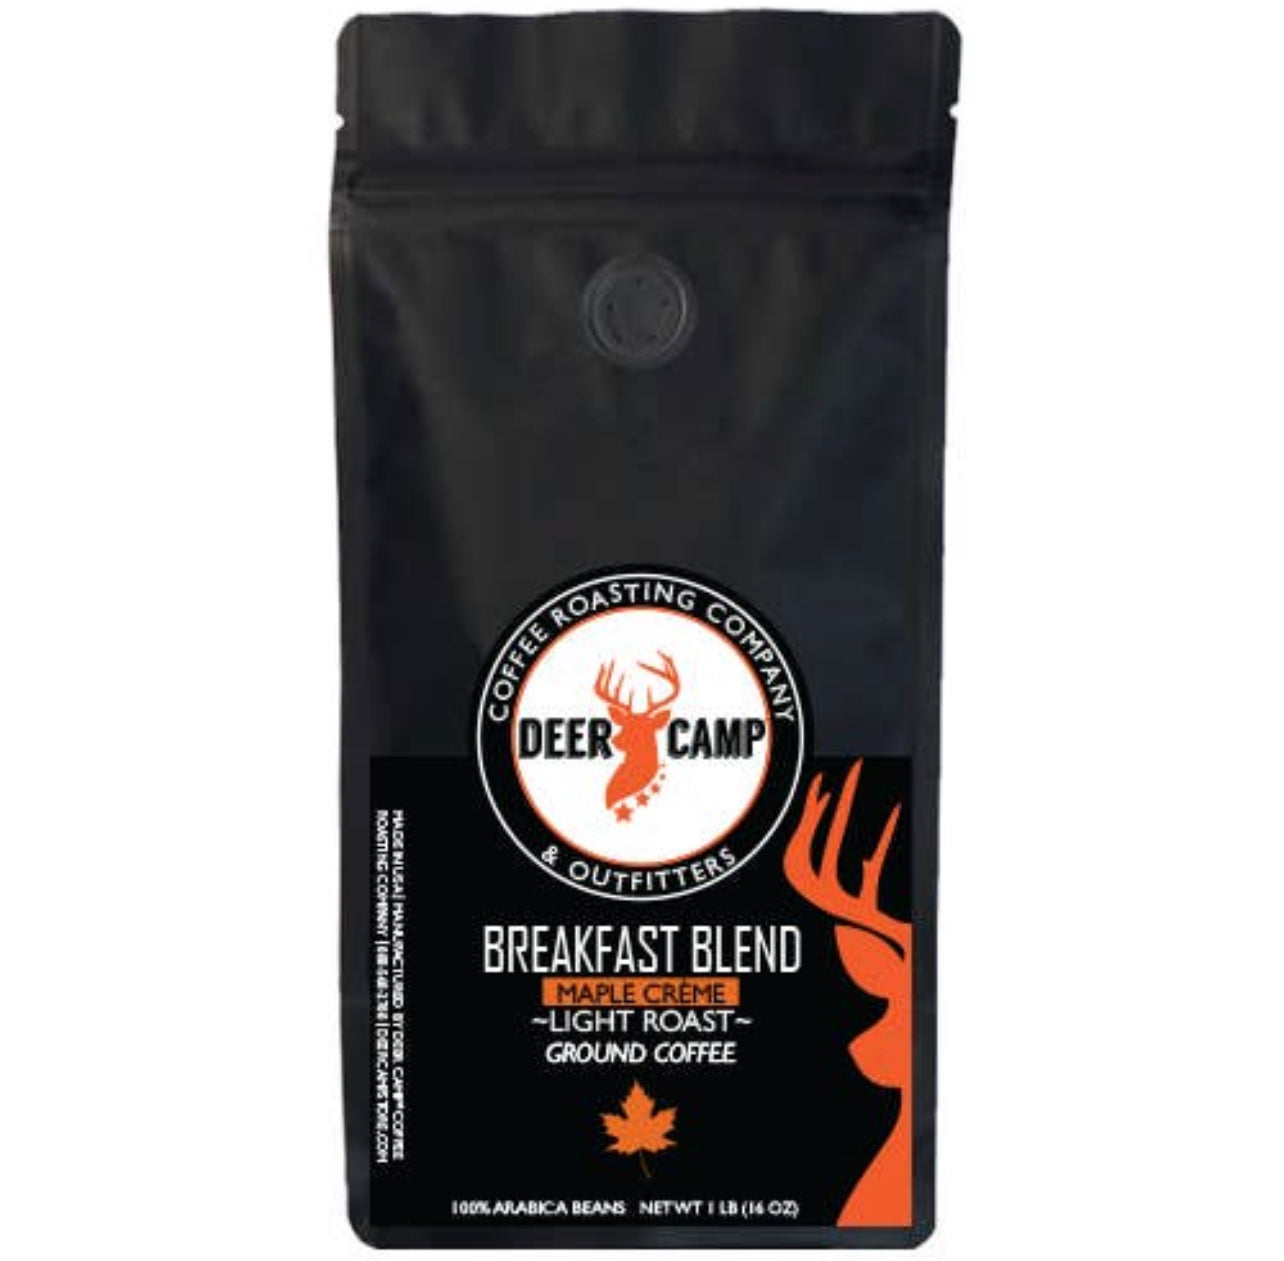 Deer Camp Coffee 16 oz Bag